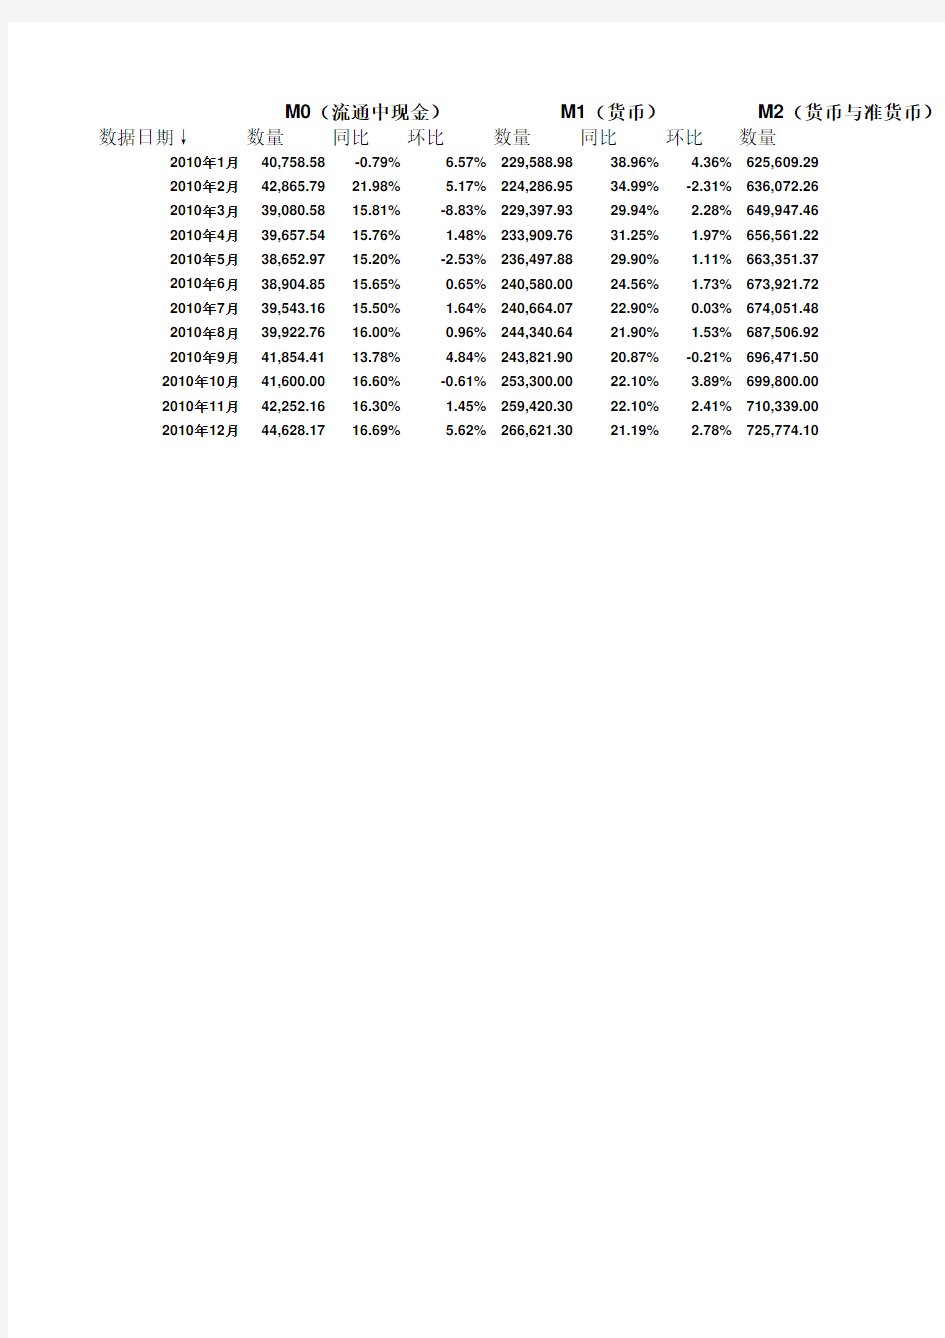 中国历年货币供应量(M0,M1,M2)数据(截止到2010年12月份数据)